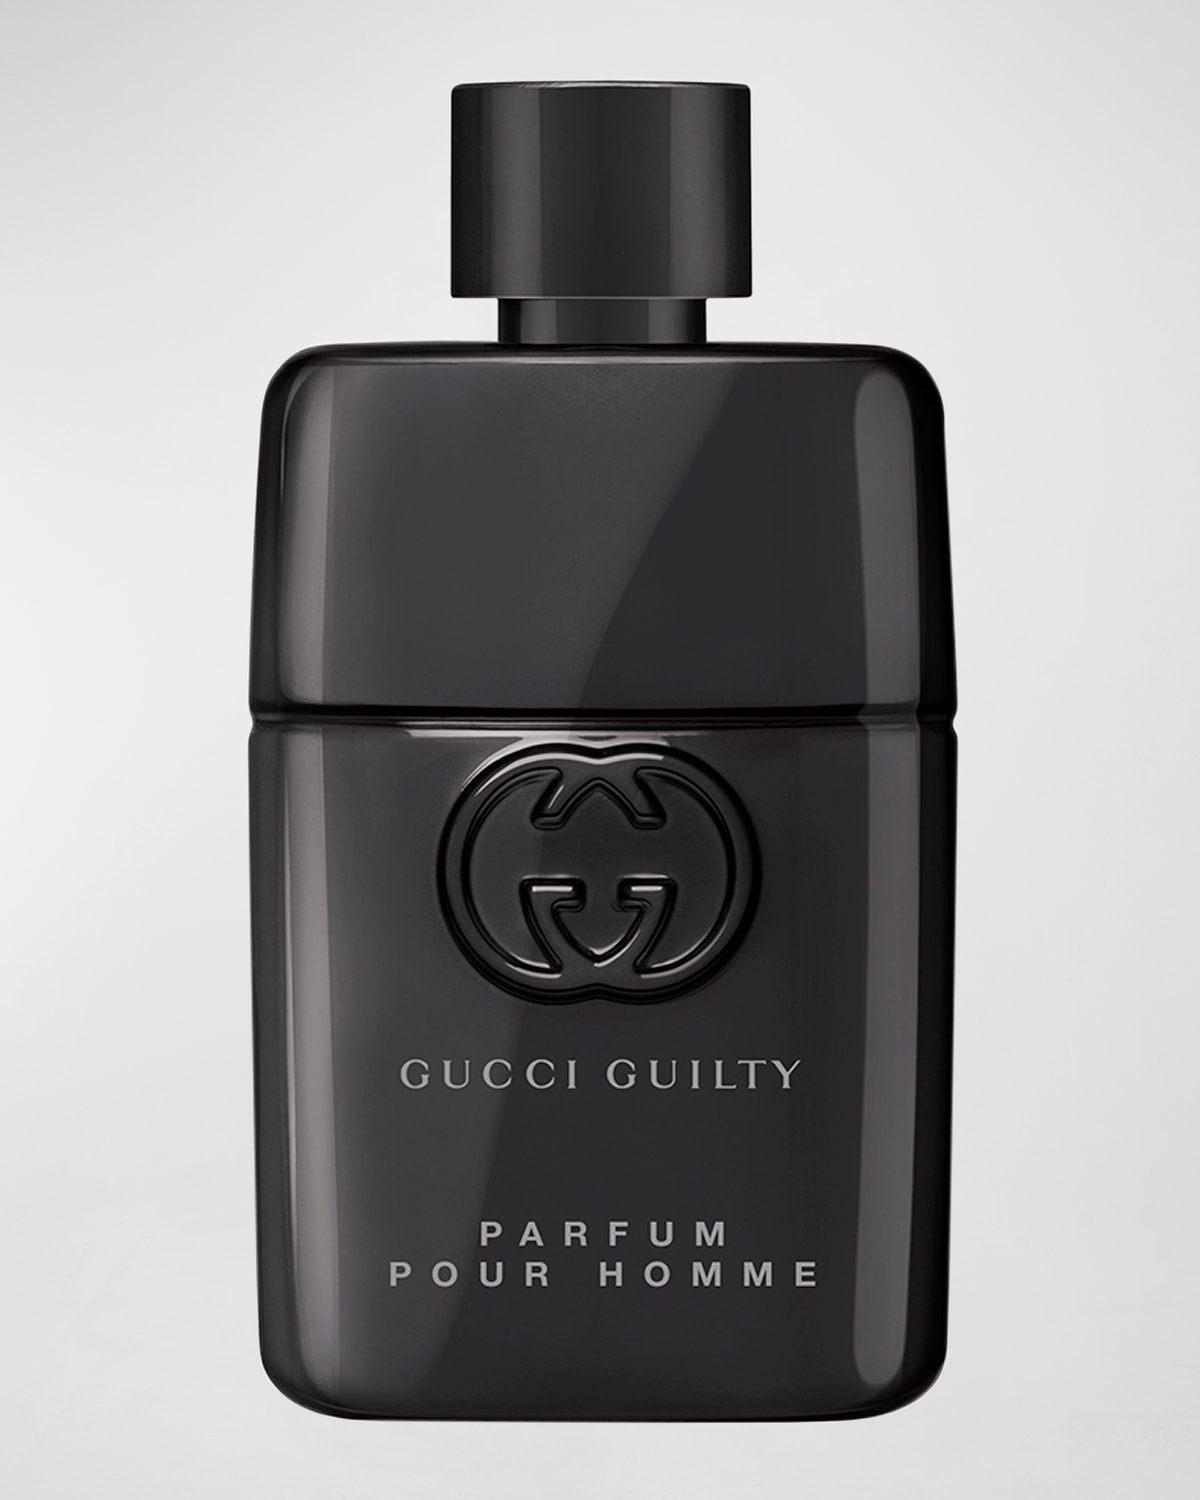 Guilty Parfum For Him 1.7 oz.